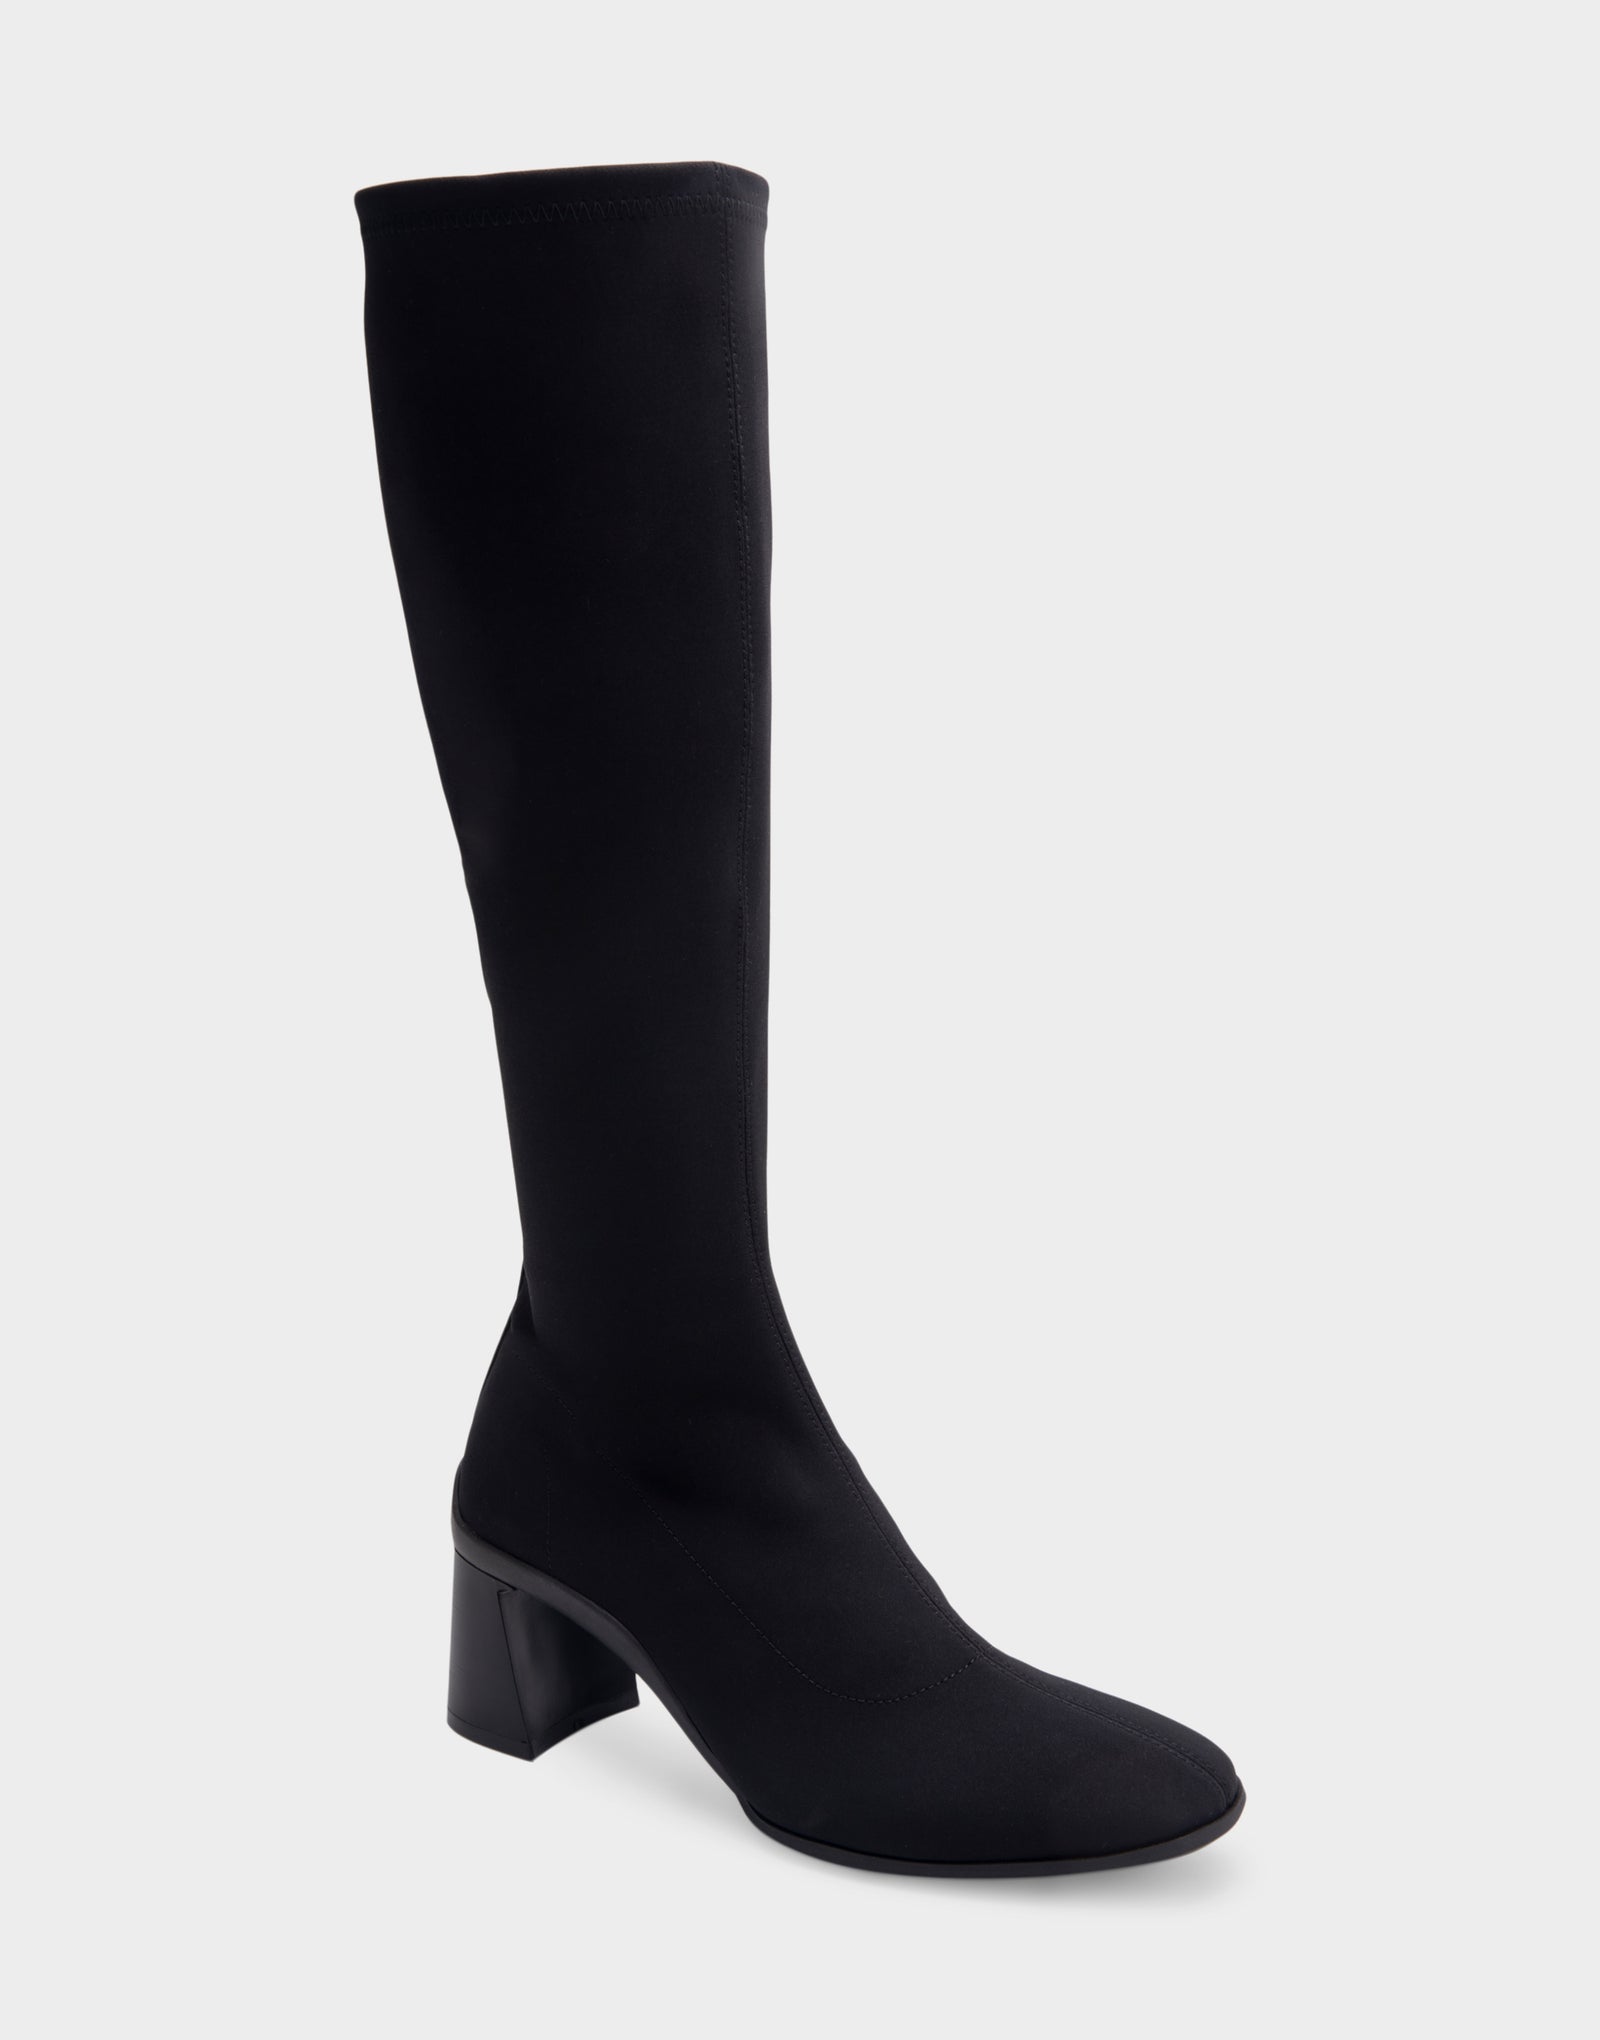 Women's Sculpted Heel Tall Shaft Boot in Black